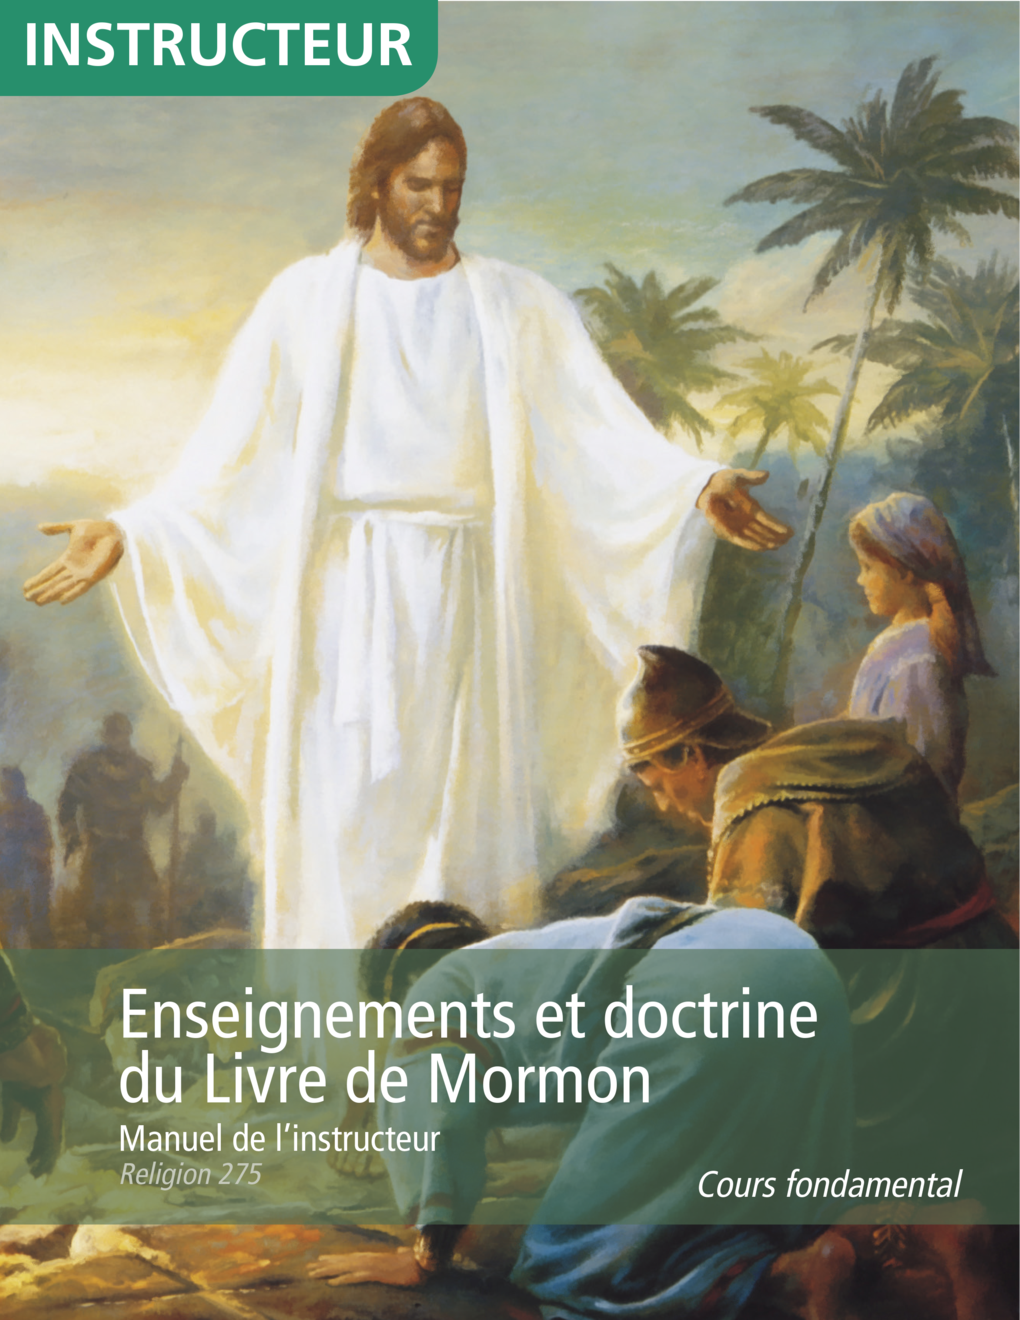 Enseignements et doctrine du Livre de Mormon, manuel de l’instructeur (Religion 275)